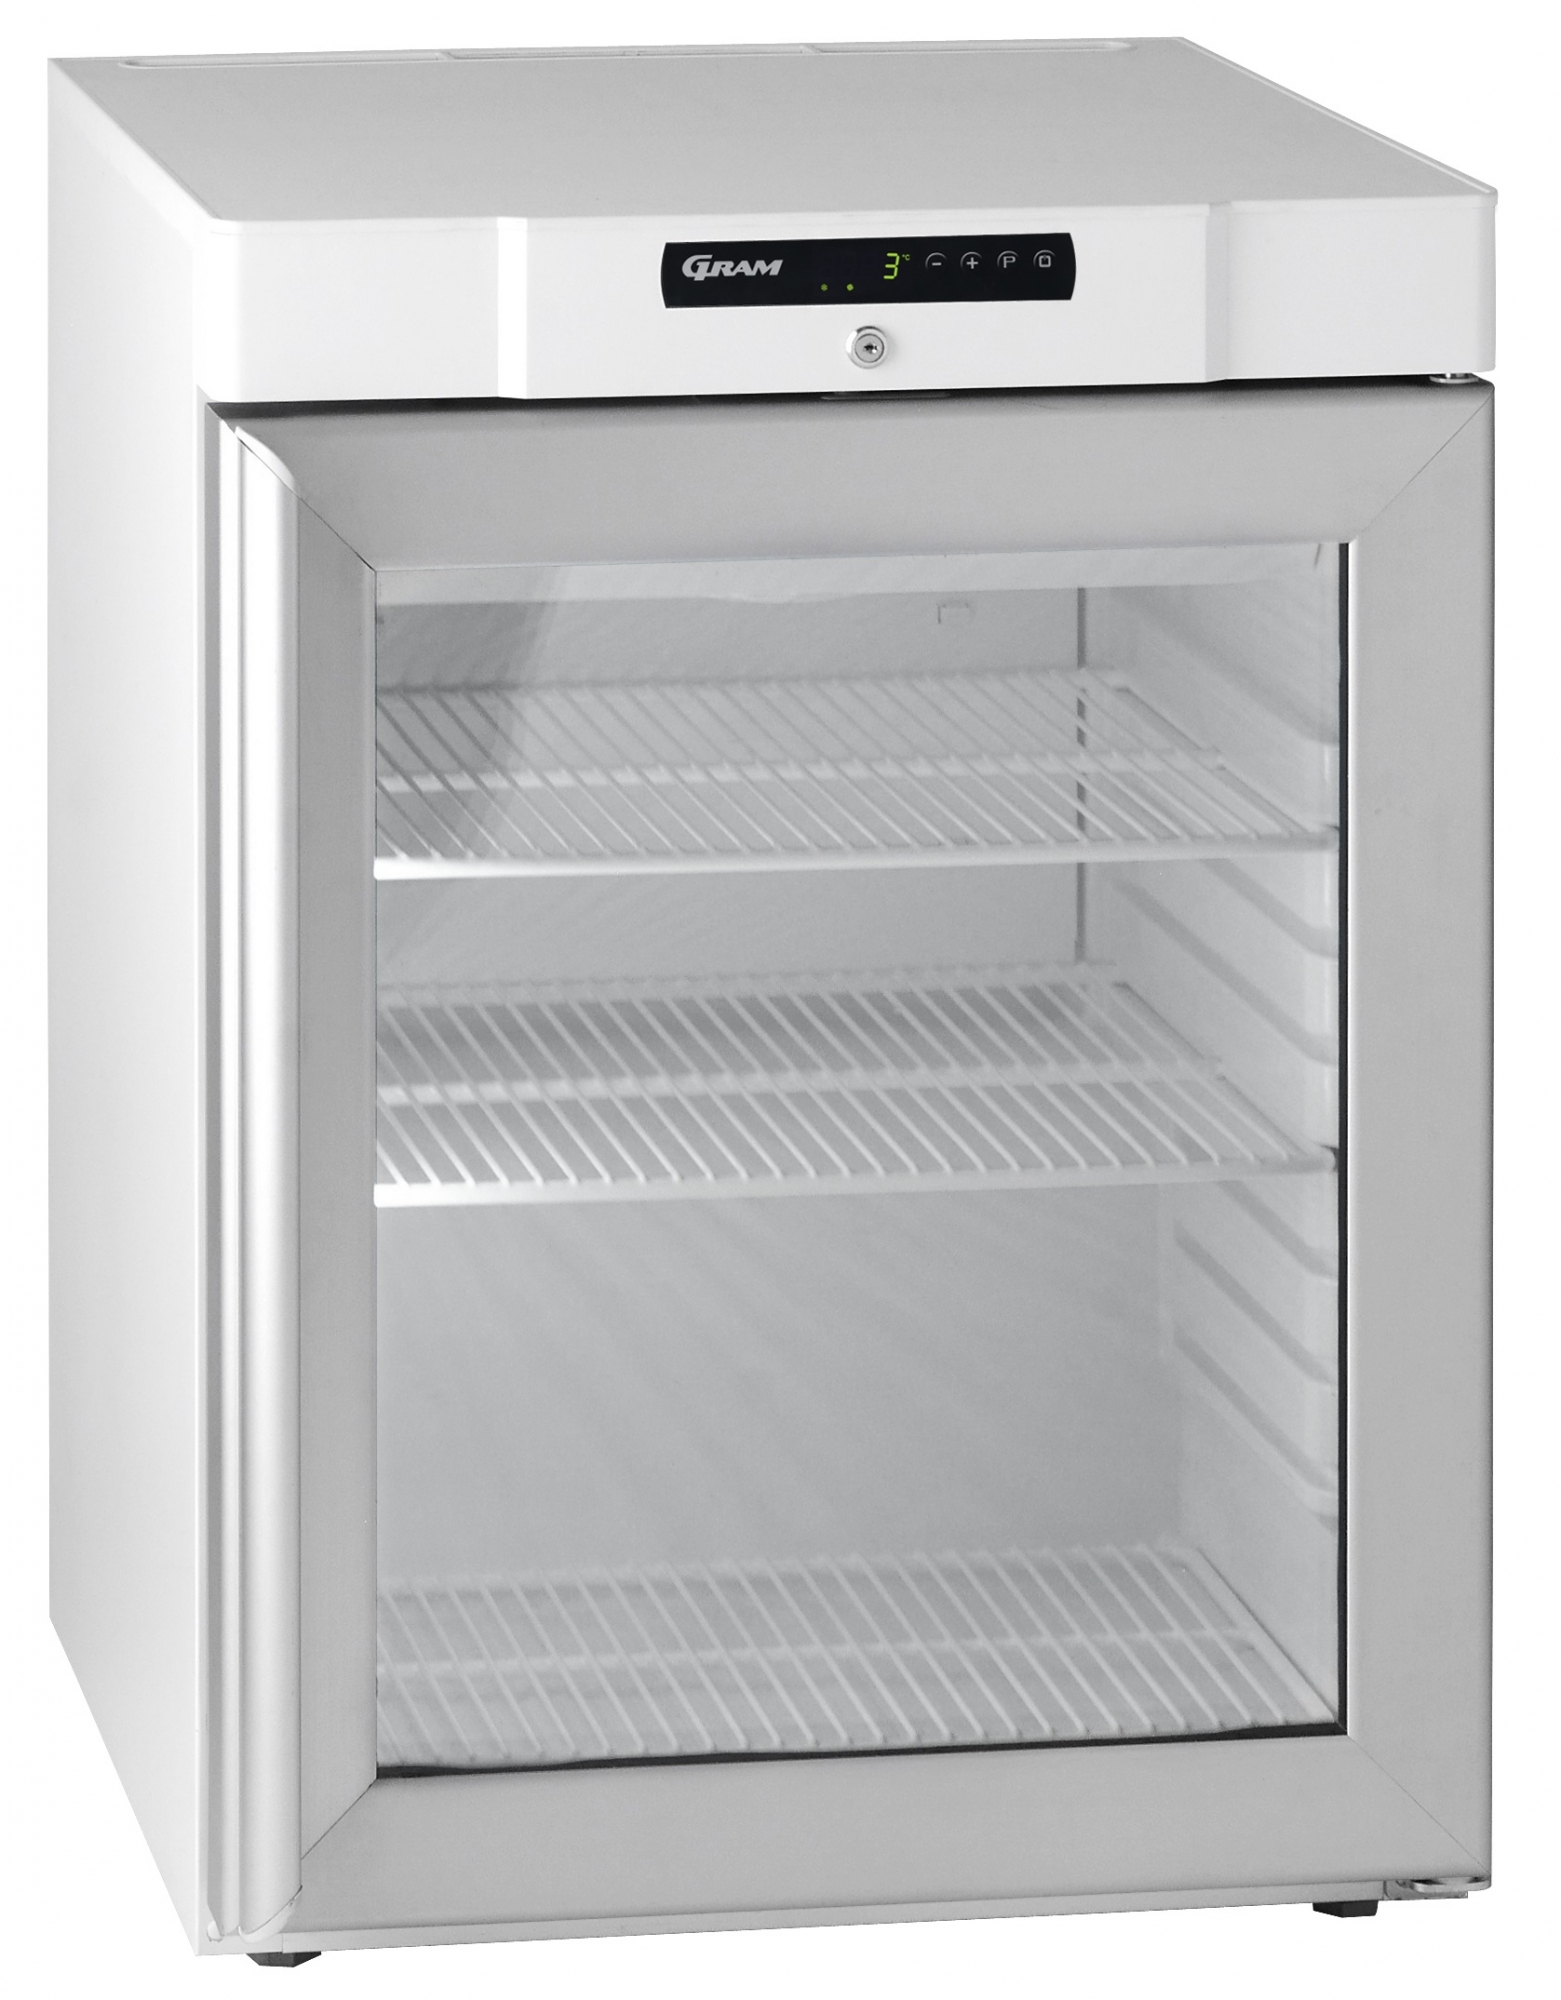 Gram Compact KG 220 LG professionele tafelmodel koelkast met glasdeur